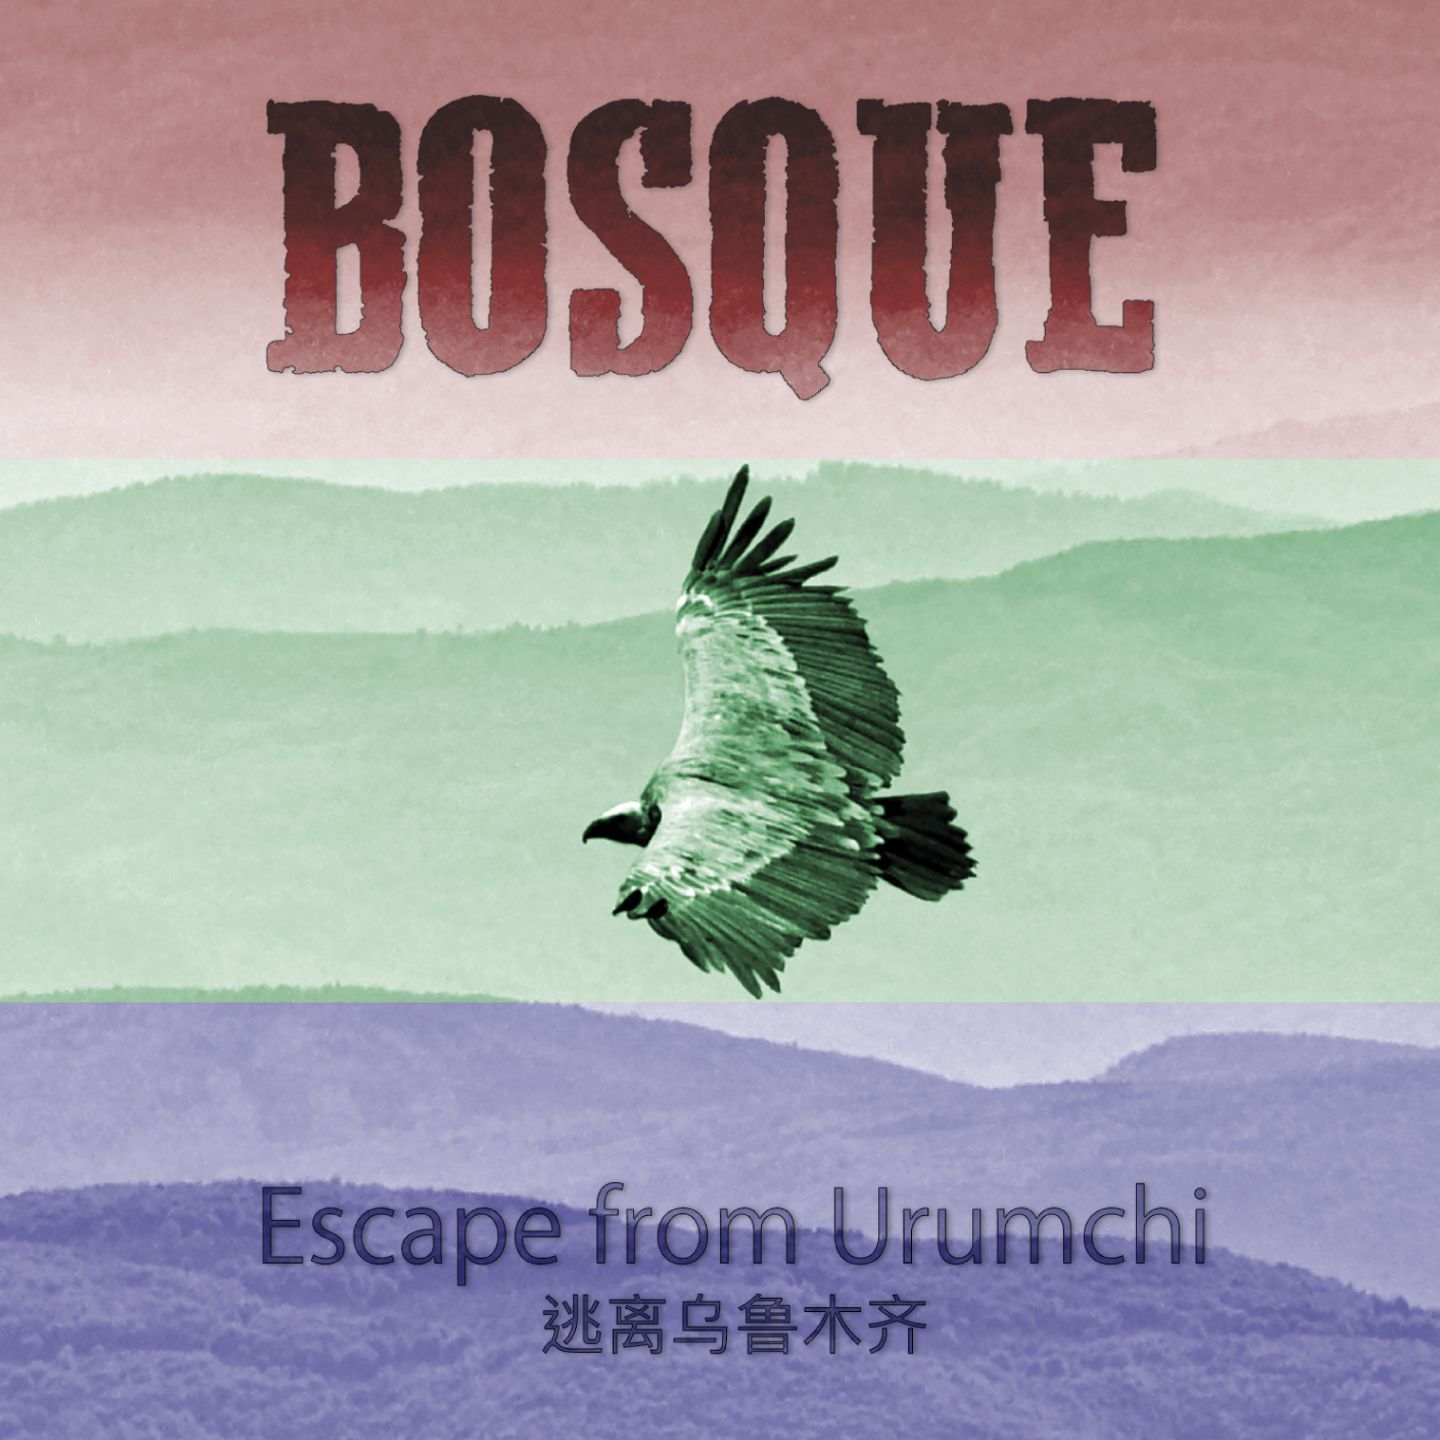 Escape from Urumchi